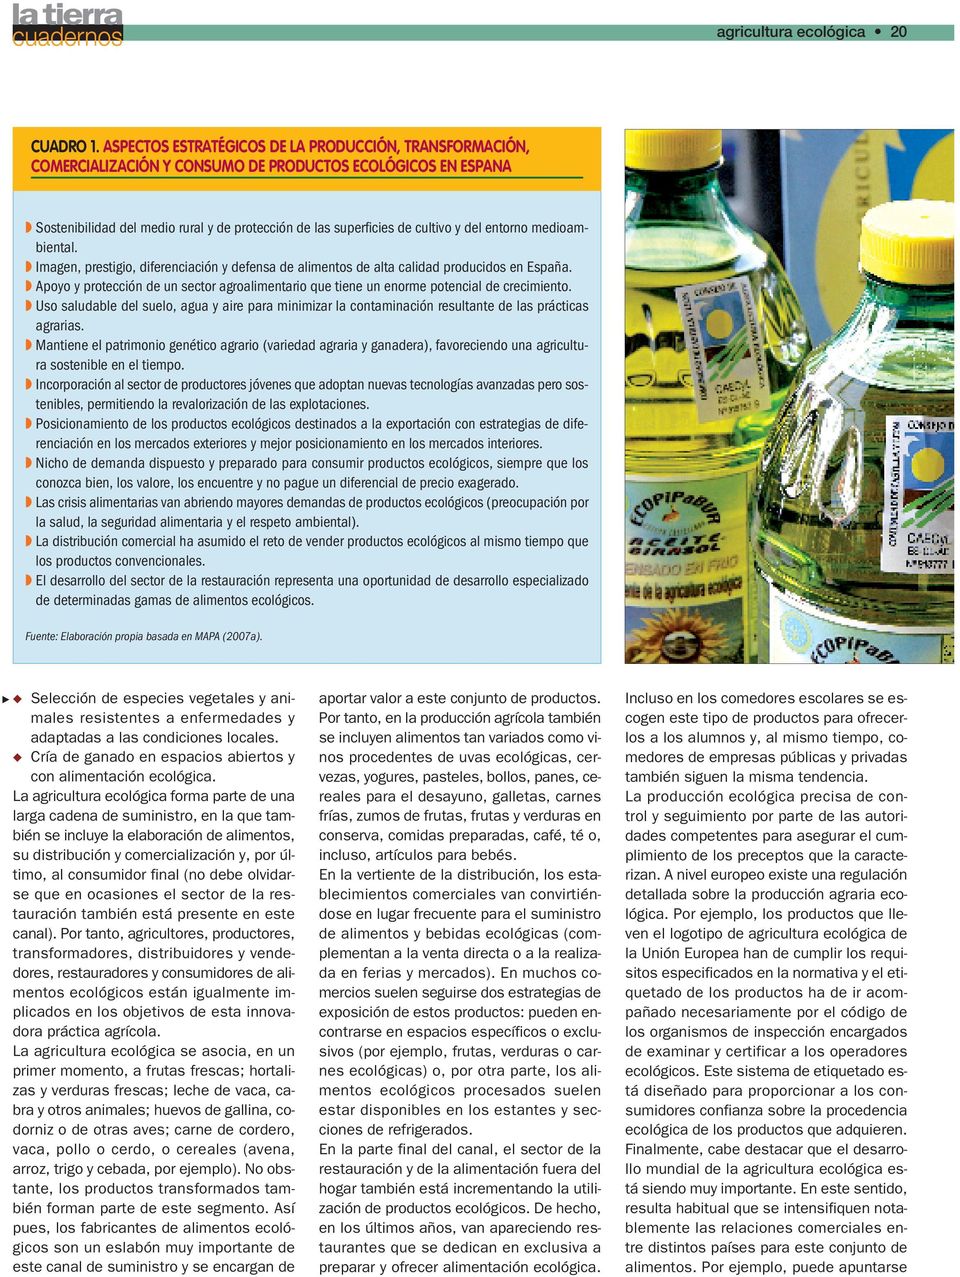 entorno medioambiental. Imagen, prestigio, diferenciación y defensa de alimentos de alta calidad producidos en España.